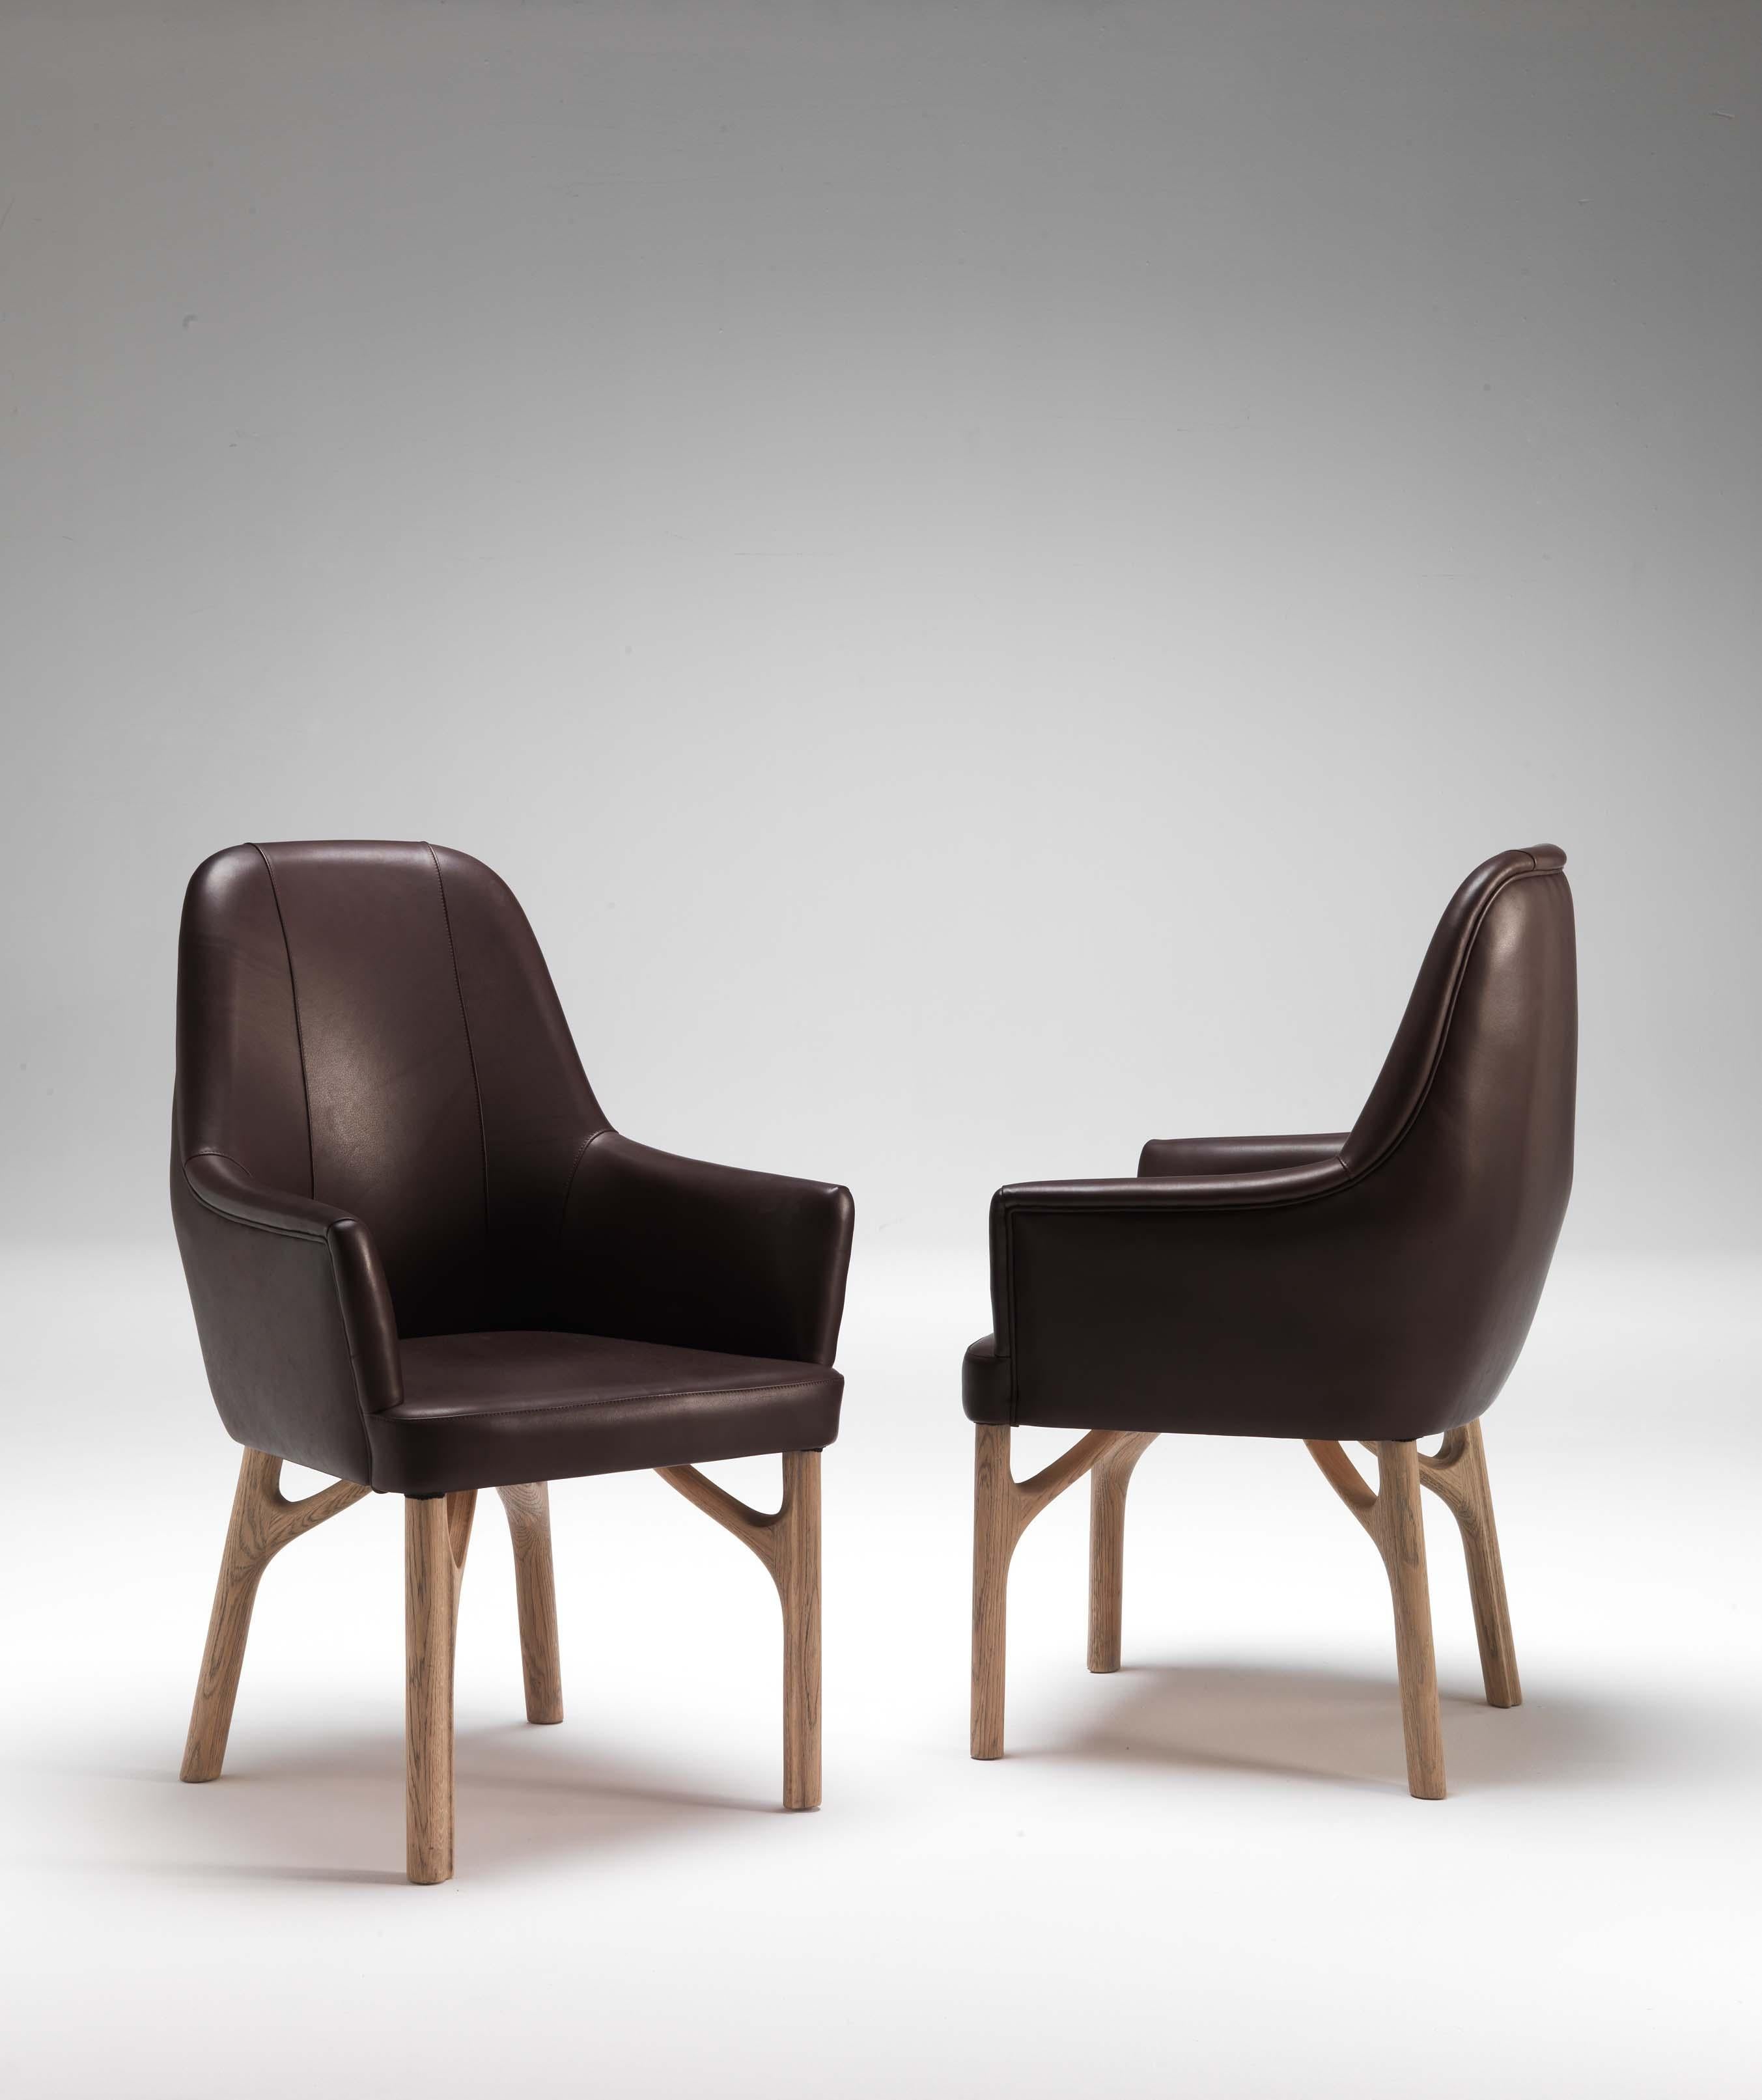 Der Sessel Arpeggio ist ein Meisterwerk italienischer Handwerkskunst, entworfen von Giopato & Coombes. Mit geschwungenen Formen und essentiellen Linien begleiten diese Stücke Tische mit einem Hauch von zeitloser Eleganz. Die Designer lassen